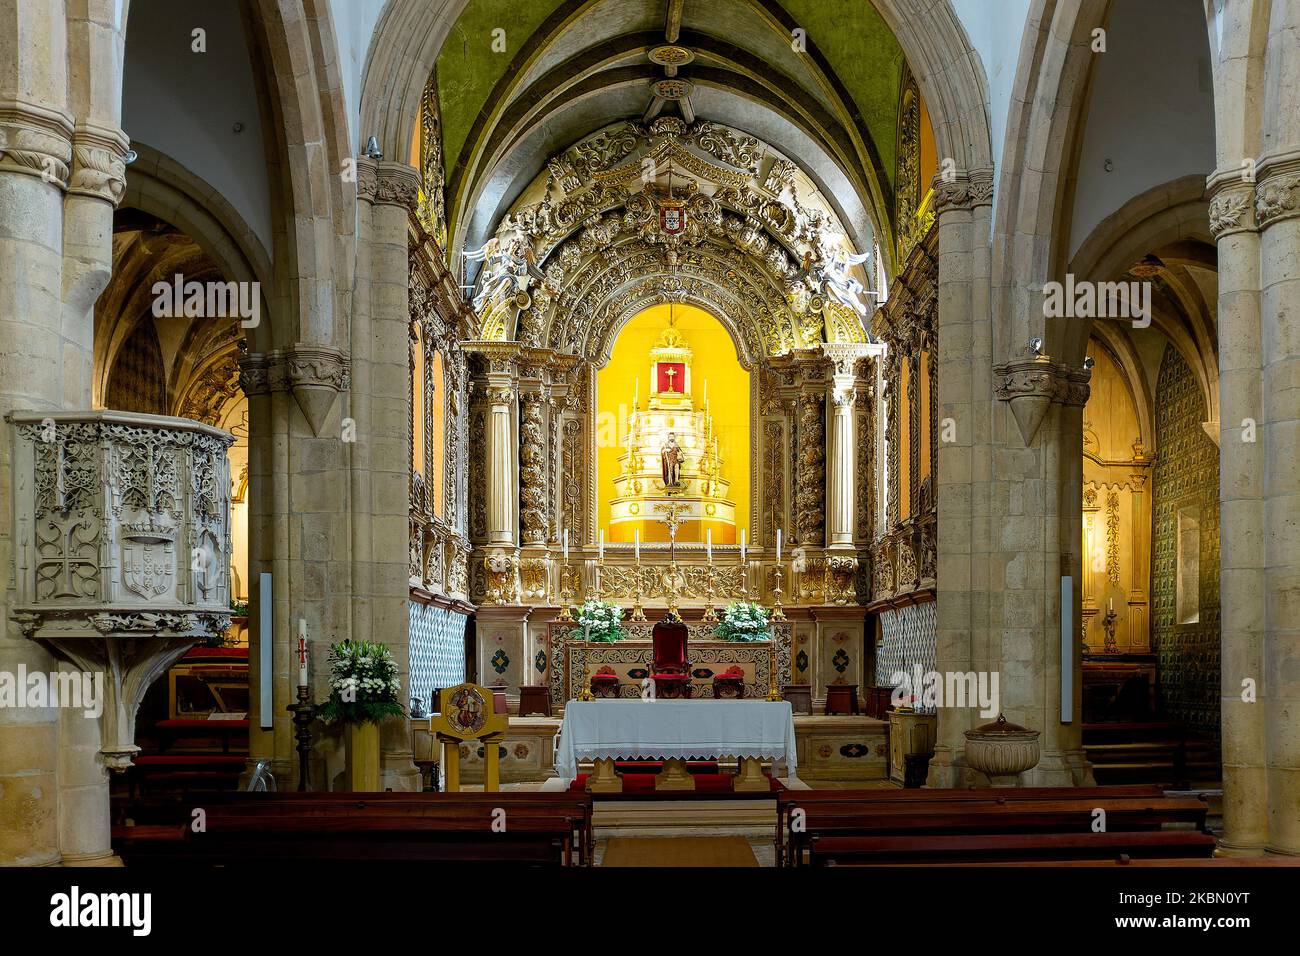 Interior of the Igreja de São João Baptista, Tomar, Portugal Stock Photo